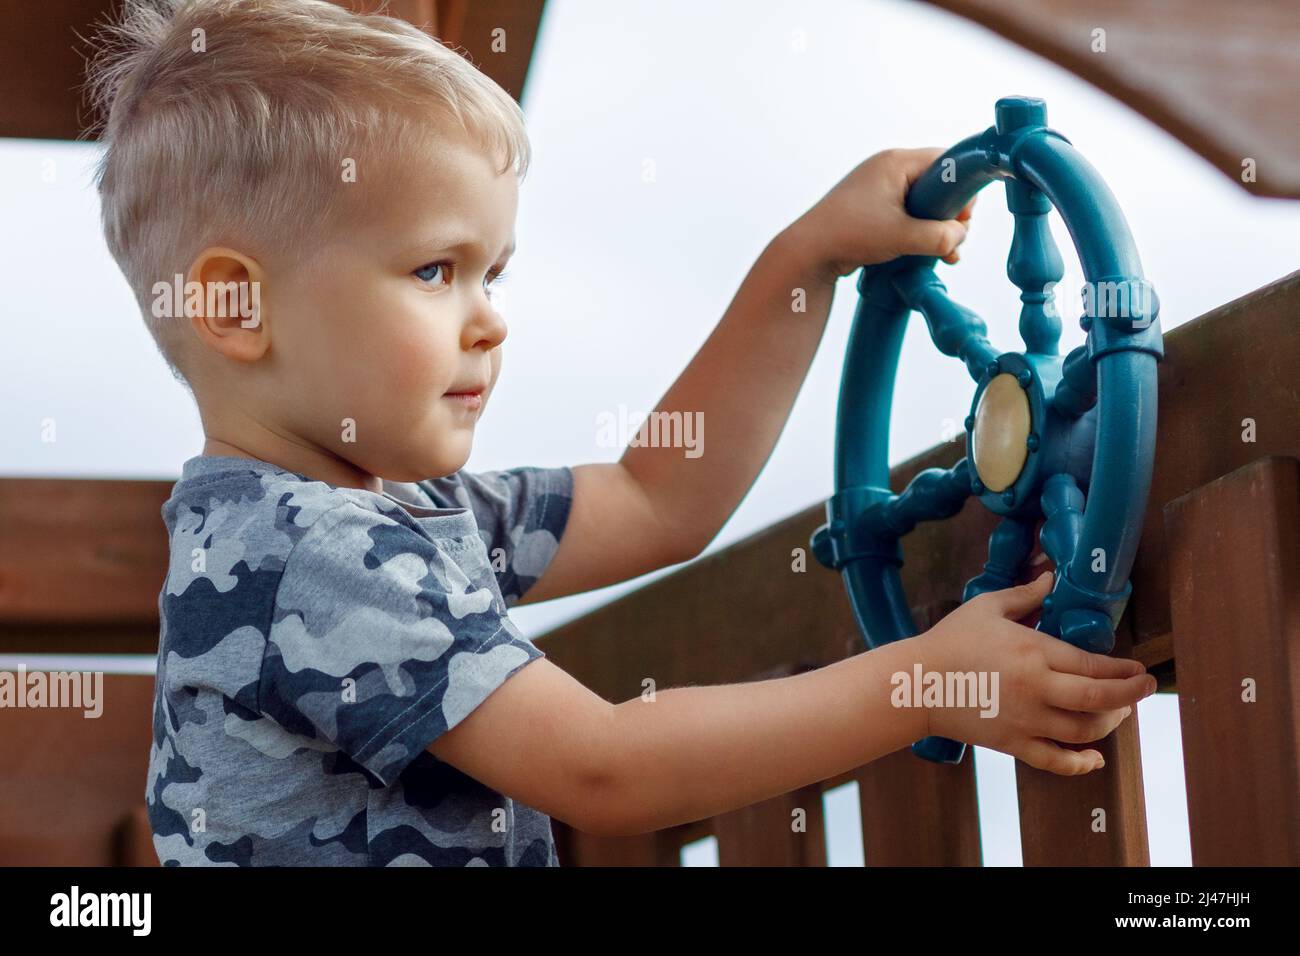 Freche Kinder fahren auf einem Spielplatz mit einem Schiffsrad. Das Kind in Camouflage fühlt sich in einem Holzspielhaus cool an. Kindheit voller Abenteuer Stockfoto